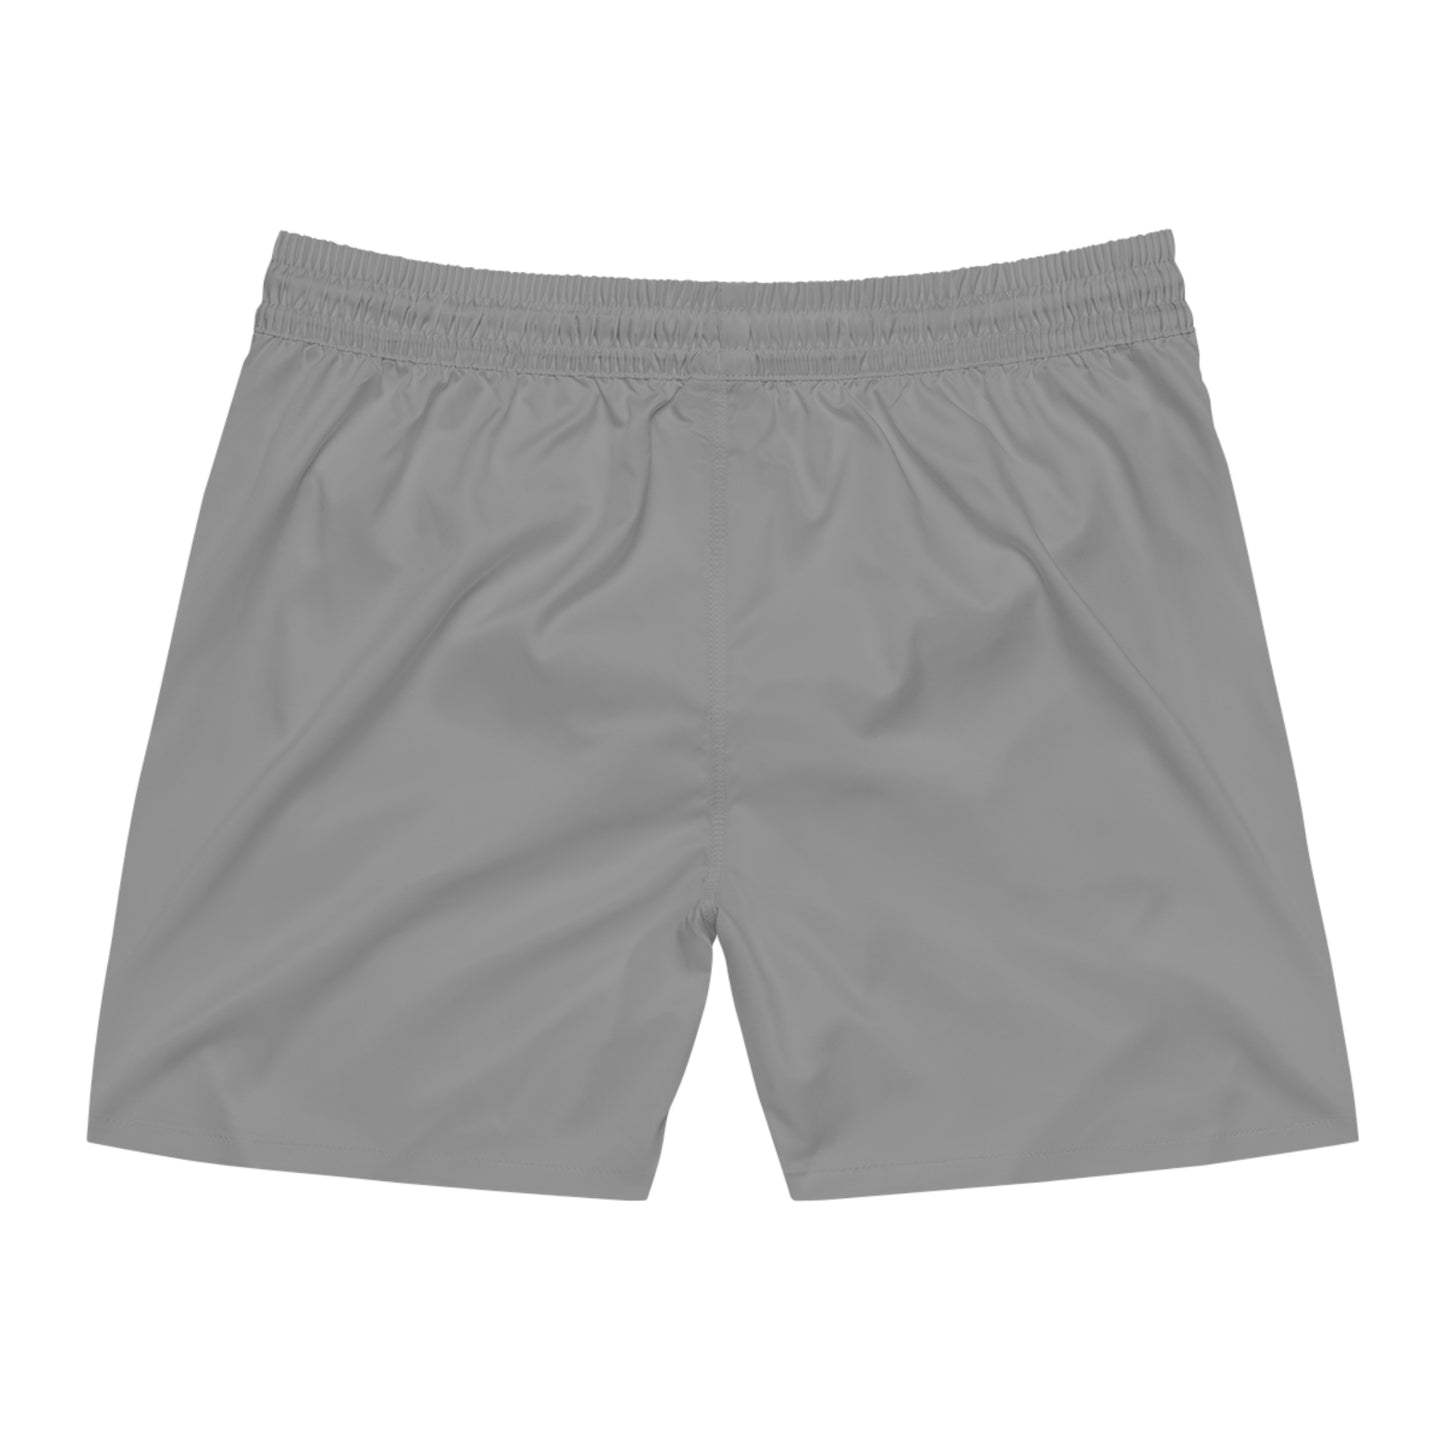 Ohio State Shorts